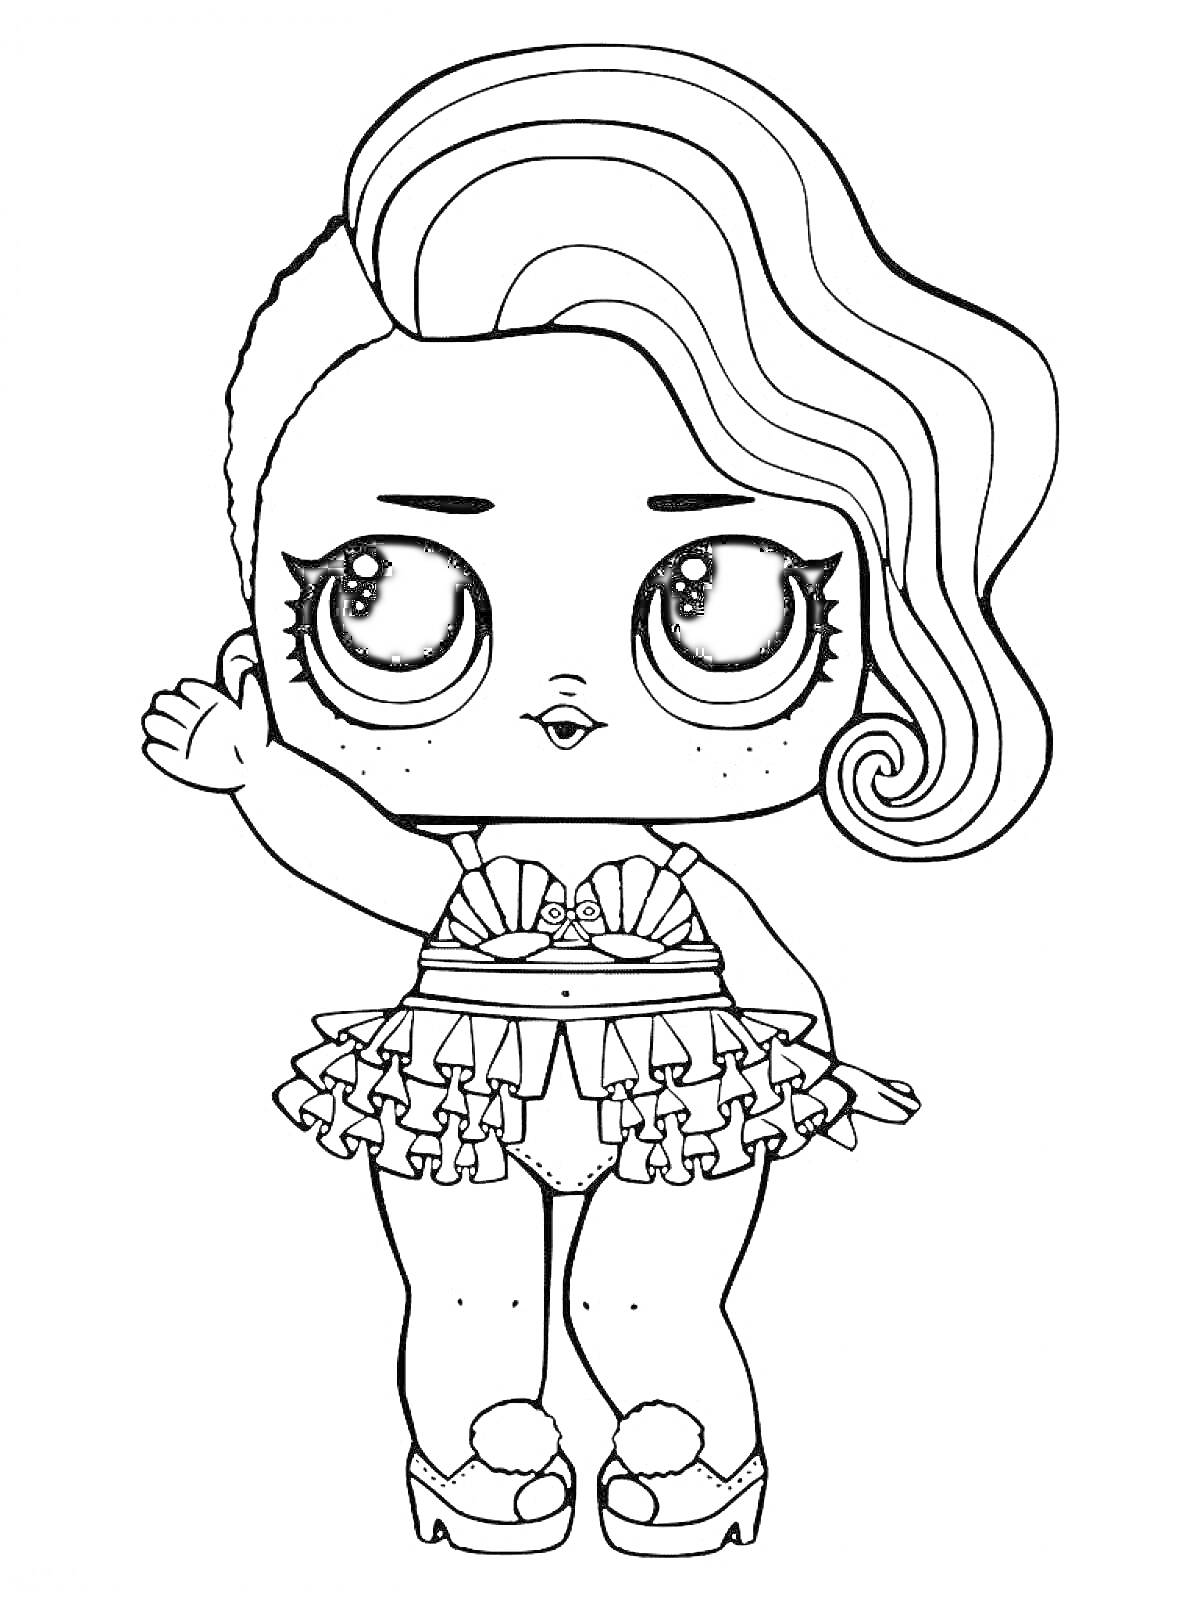 Раскраска Девочка ЛОЛ с волнистыми волосами и рюками, в юбке и туфлях с бантиками, с поднятой рукой и веснушками на лице